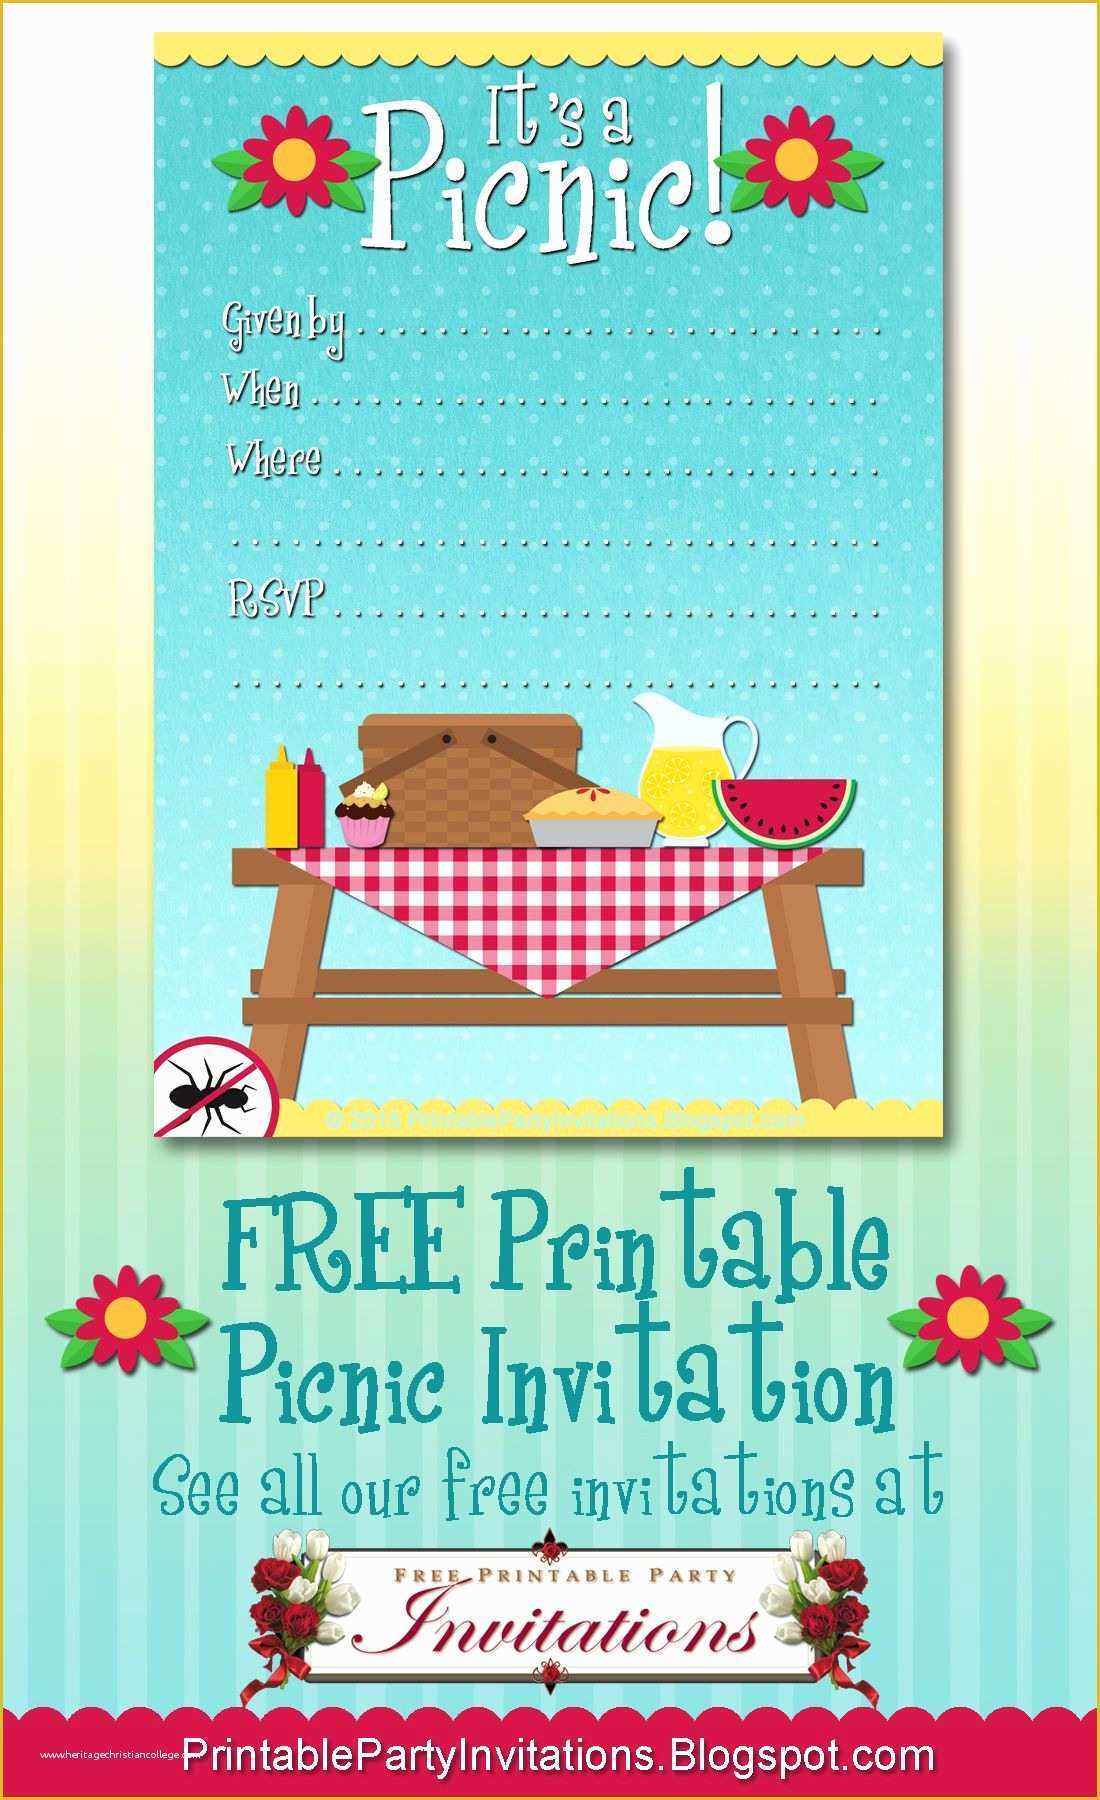 Free Picnic Invitation Template Of Free Printable Picnic Invitation